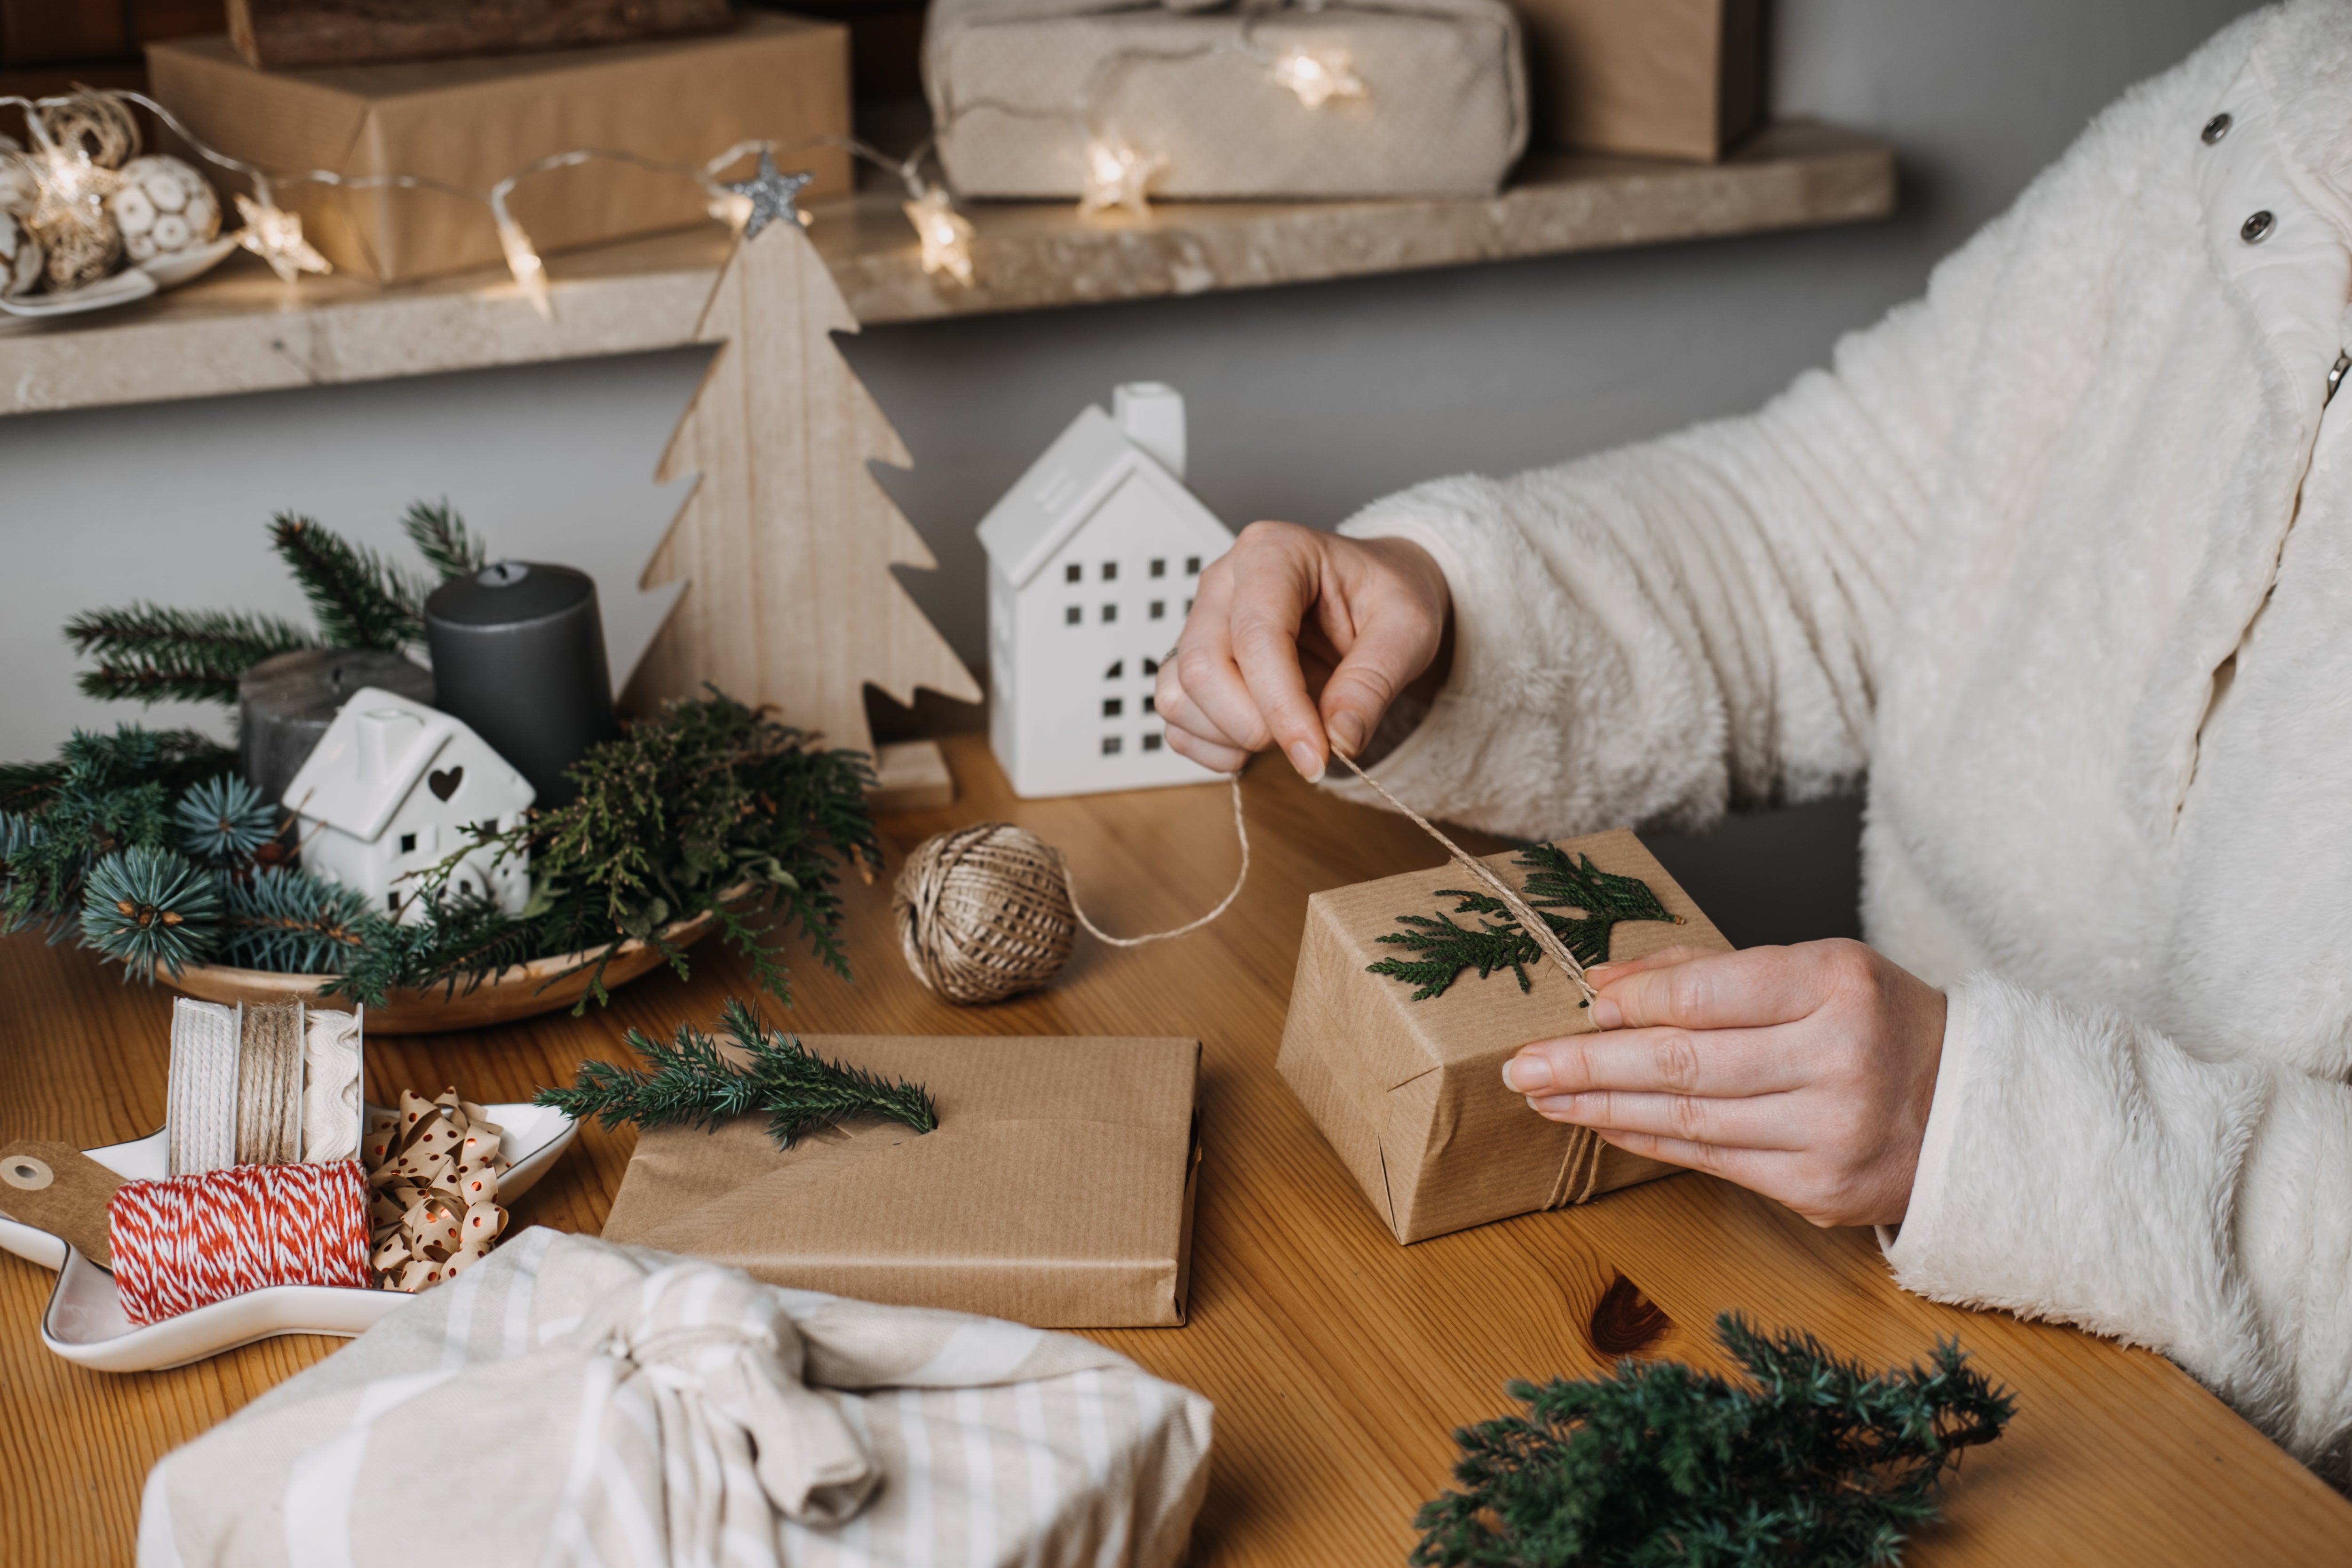 Grüne Weihnachten: 5 originelle Geschenkideen für Gesundheit und Wohlbefinden 🎁🎄